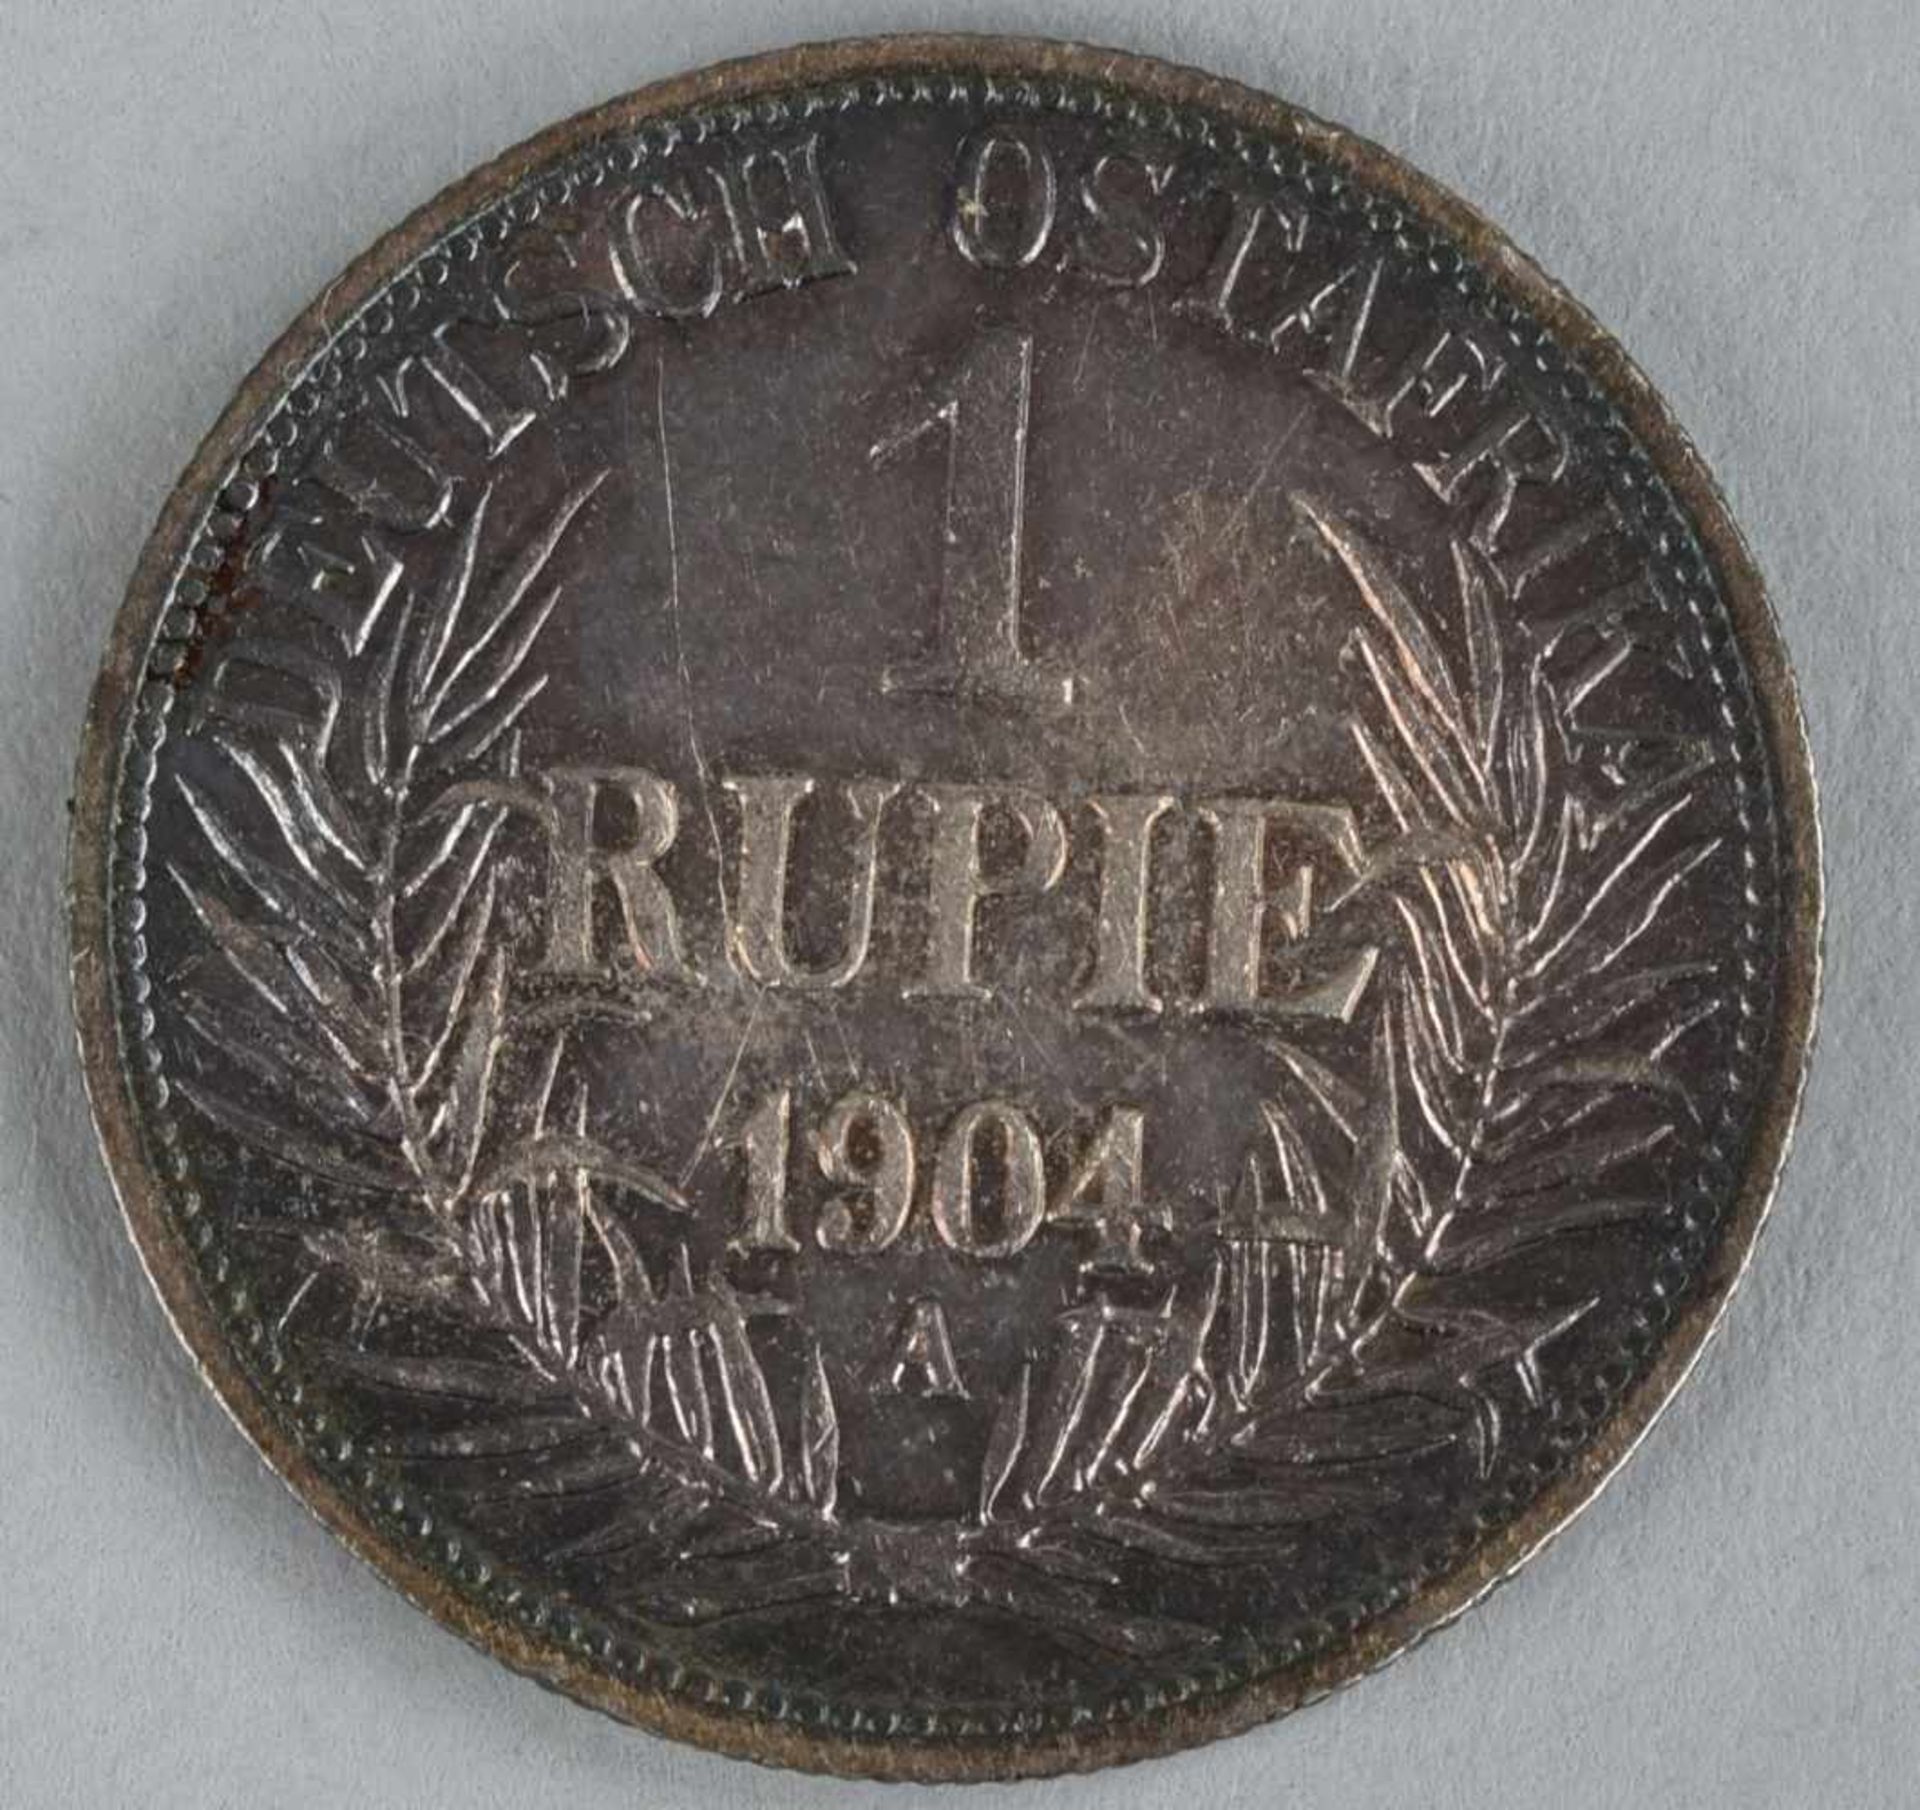 Silbermünze Deutsche Kolonien 1904 1 Rupie in Silber, Deutsch-Ostafrika, av. Wertangabe mit - Bild 2 aus 2